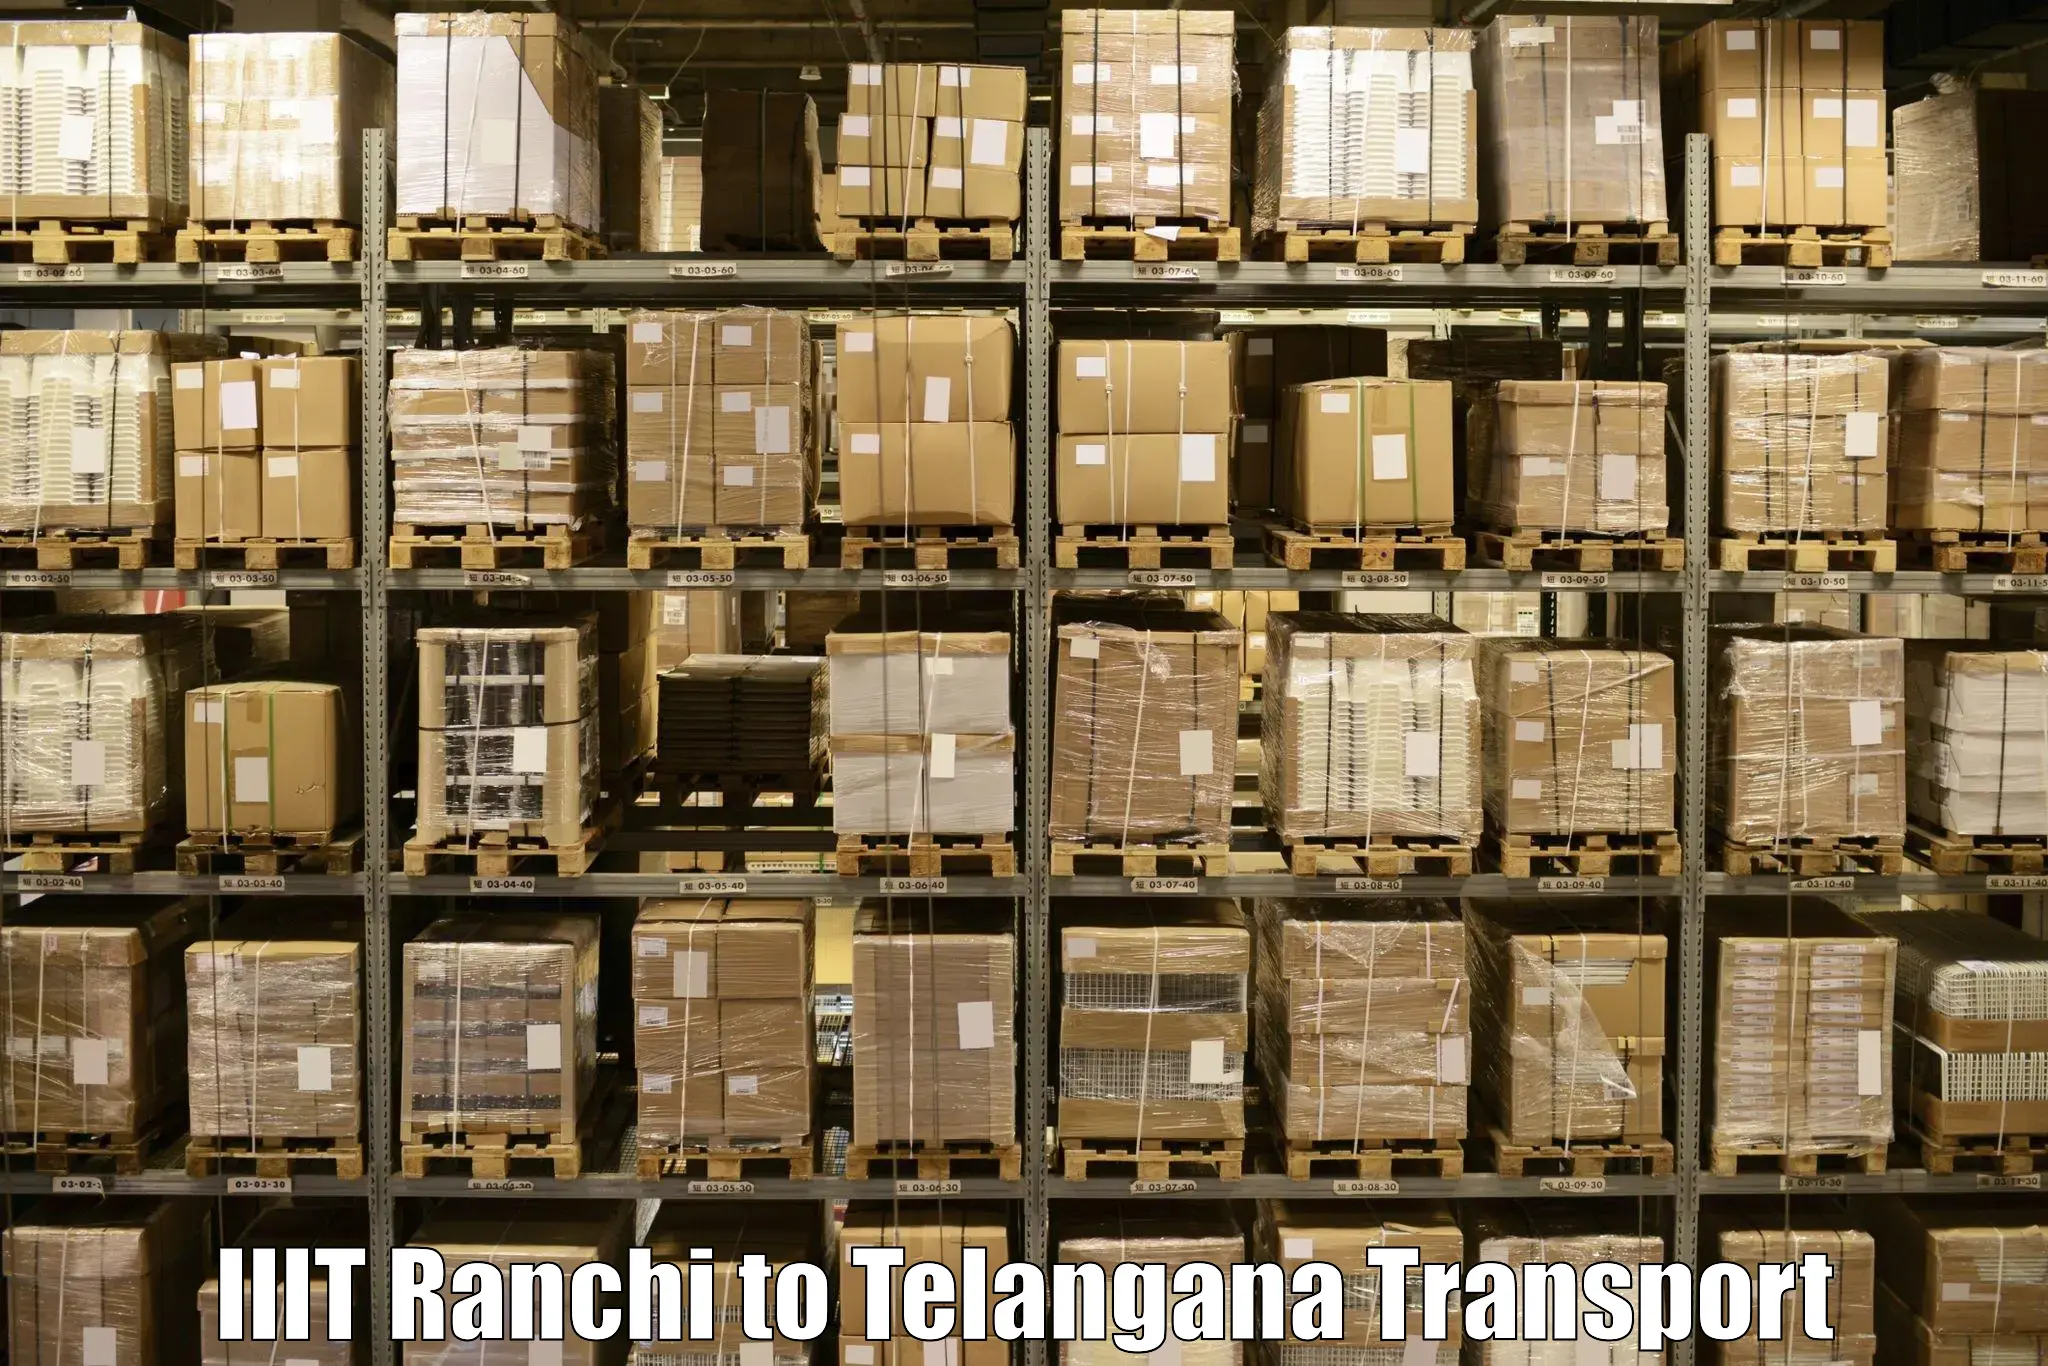 Truck transport companies in India IIIT Ranchi to Sircilla